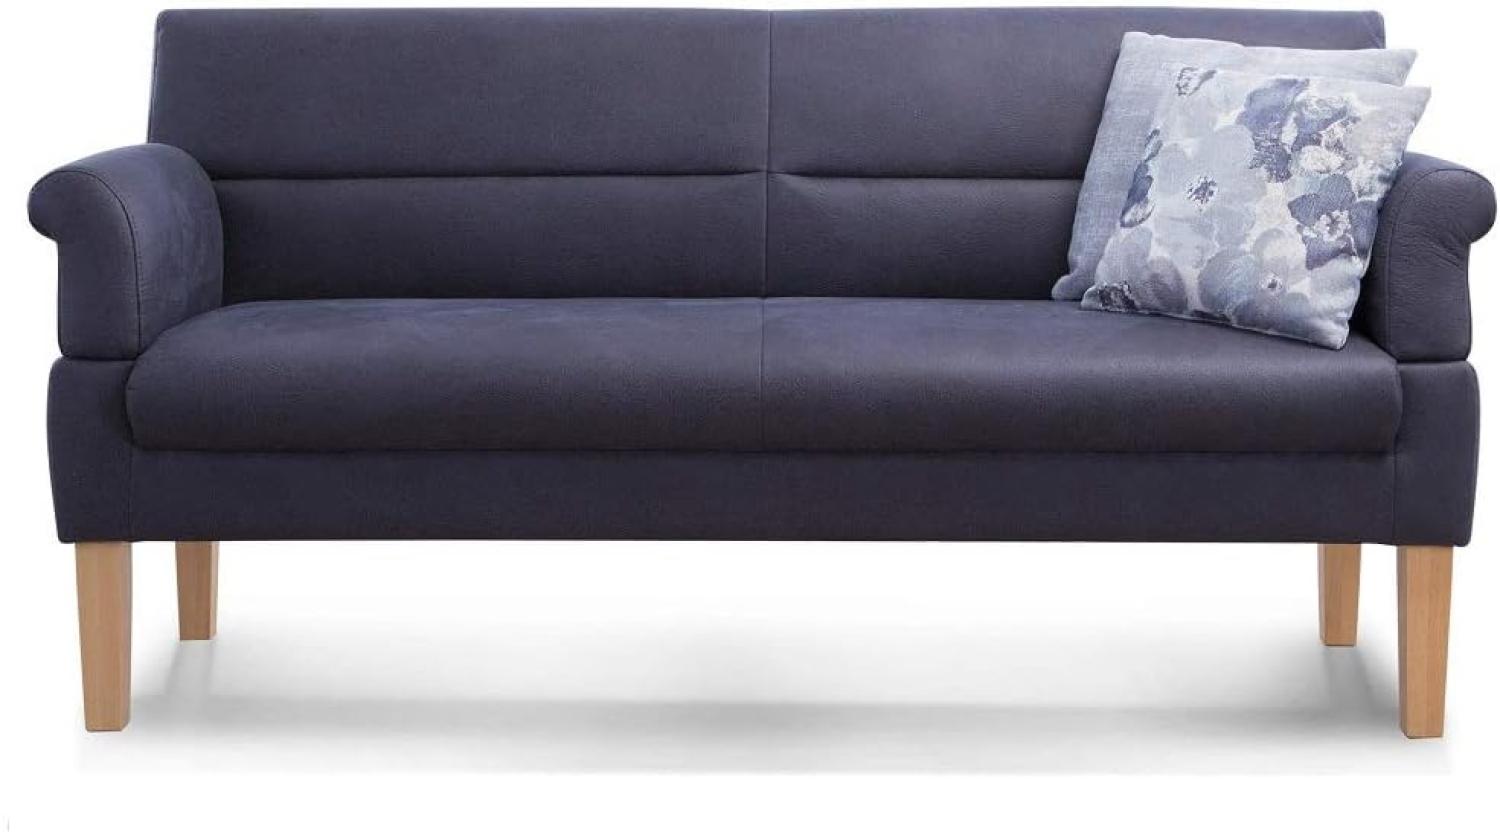 Cavadore 3-Sitzer Sofa Kira mit Federkern / Sitzbank für Küche, Esszimmer / Inkl. Armteilfunktion / 189 x 94 x 81 / Kunstleder dunkelblau Bild 1